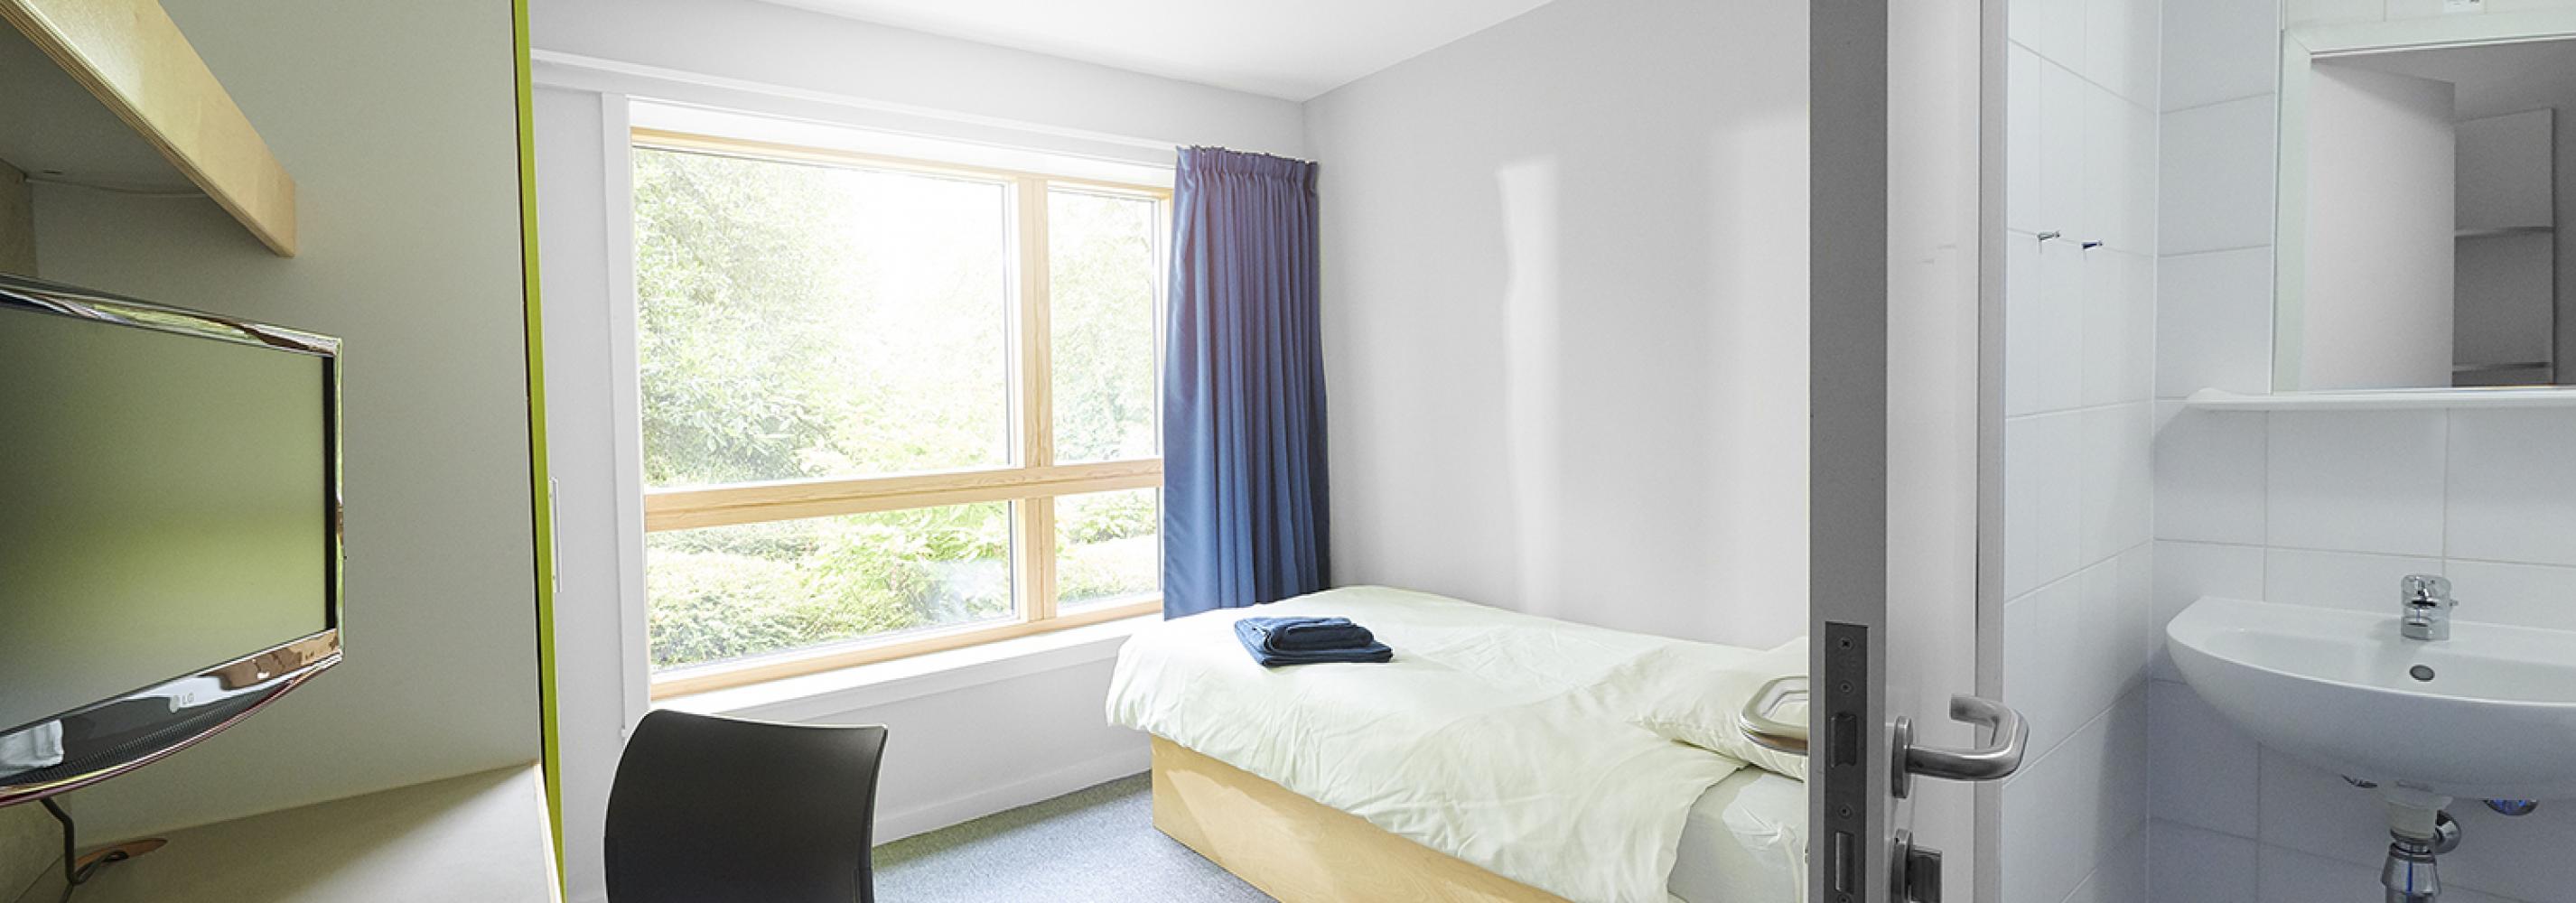 Bedroom interior showing en-suite facilities.